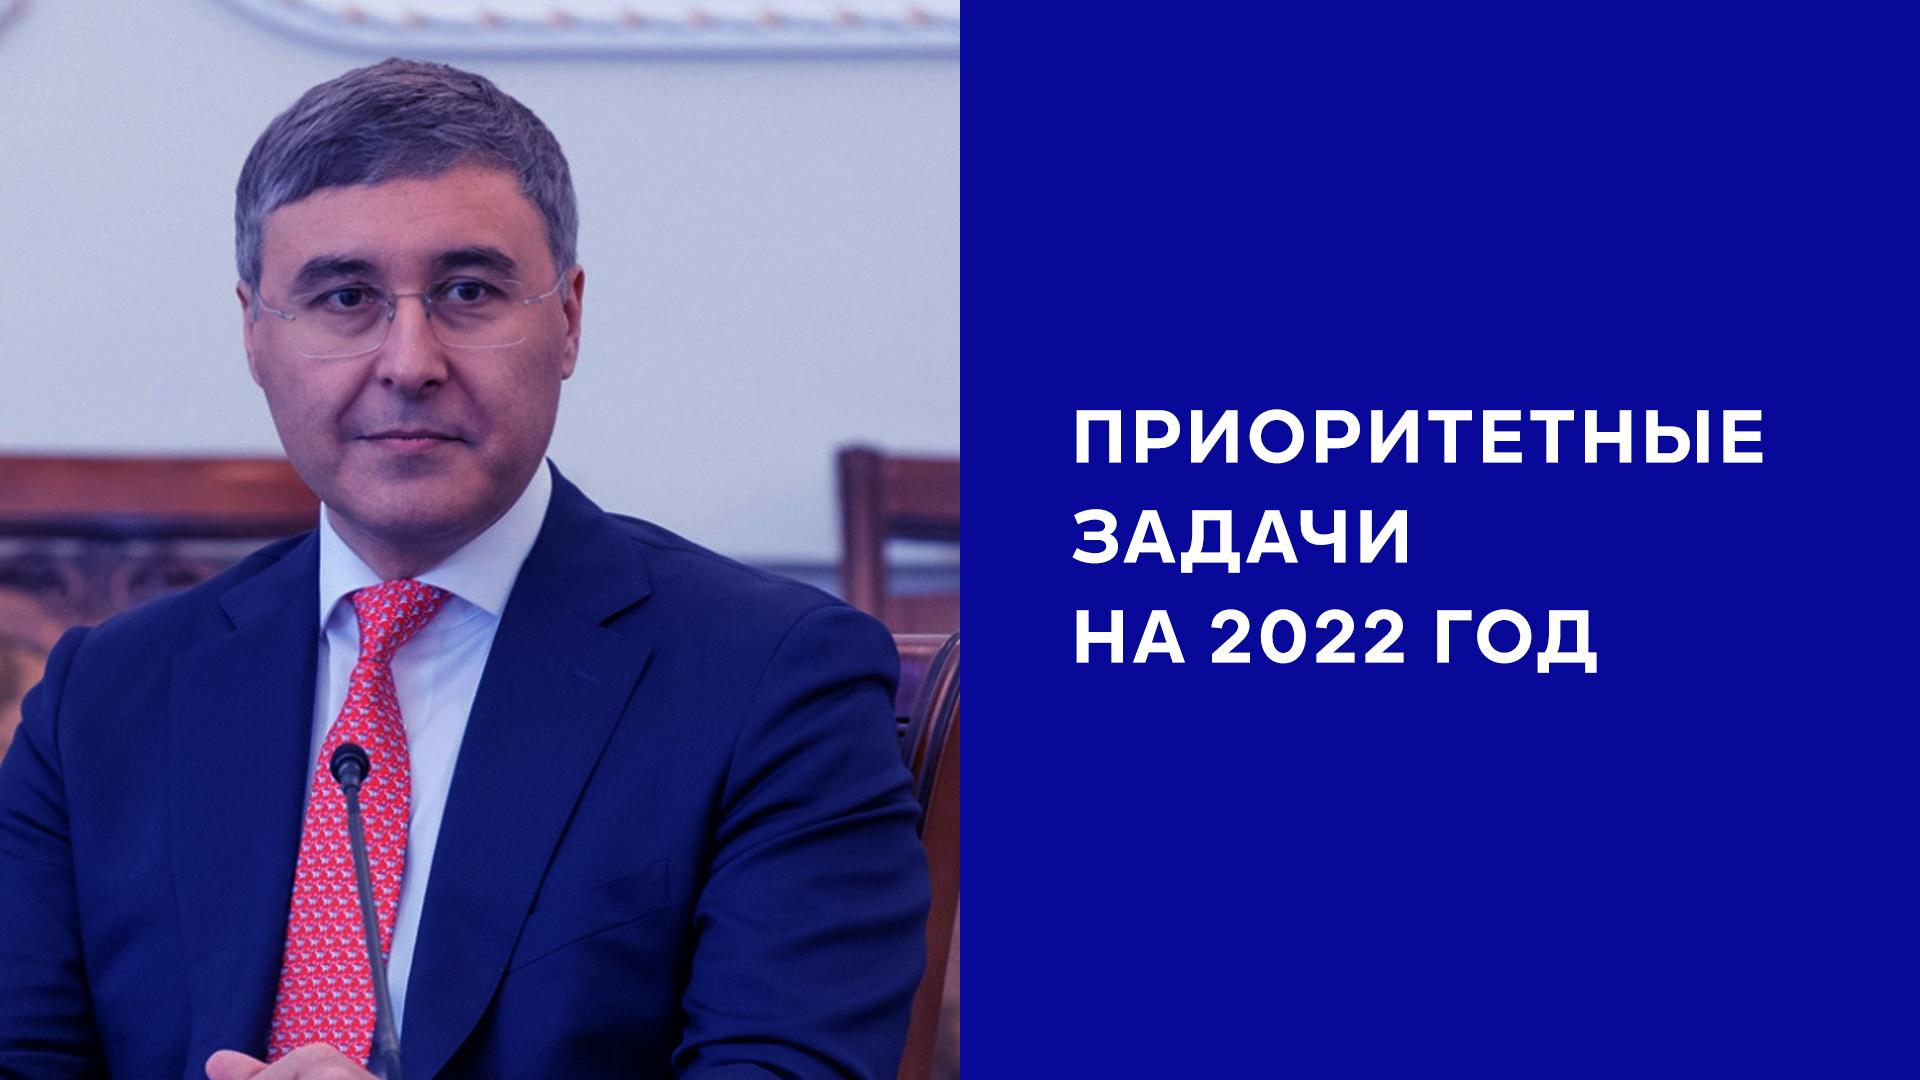 Министр образования Валерий Фальков назвал приоритетные задачи на 2022 год